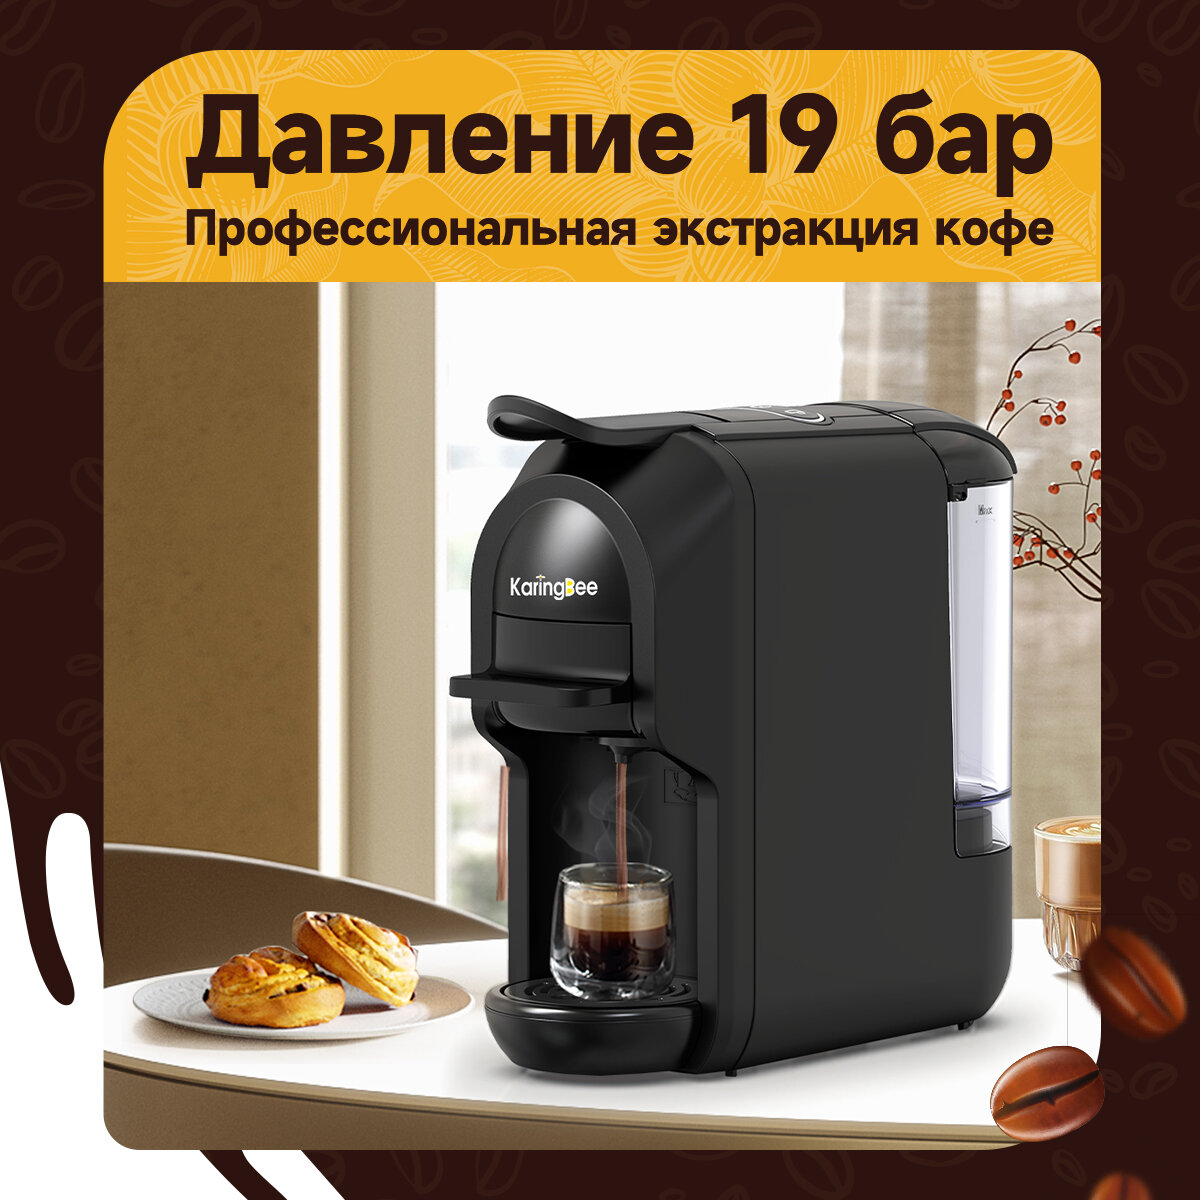 Капсульная кофемашина KaringBee ST-510, 4-в-1 черный/мощность 1450 Вт и давлением 19 бар/эспрессо и американо/капсулы Nespresso+Dolce Gusto+ESE 44мм+молотный кофе